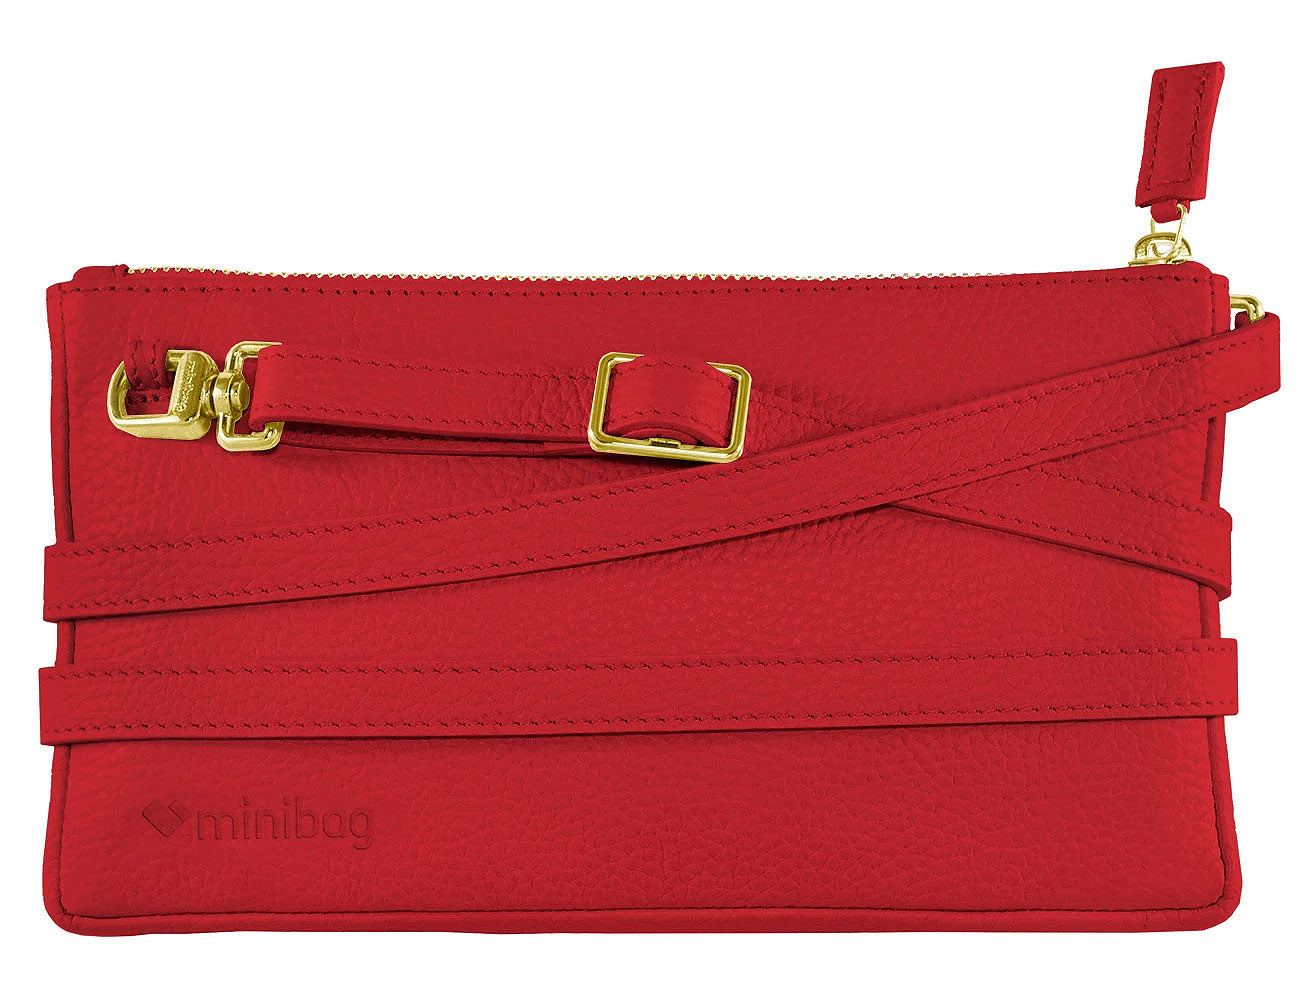 minibag red Edition GOLD, Ledertasche rot, Clutch rot, Vorderseite minibag, Geldtasche zum Umhängen